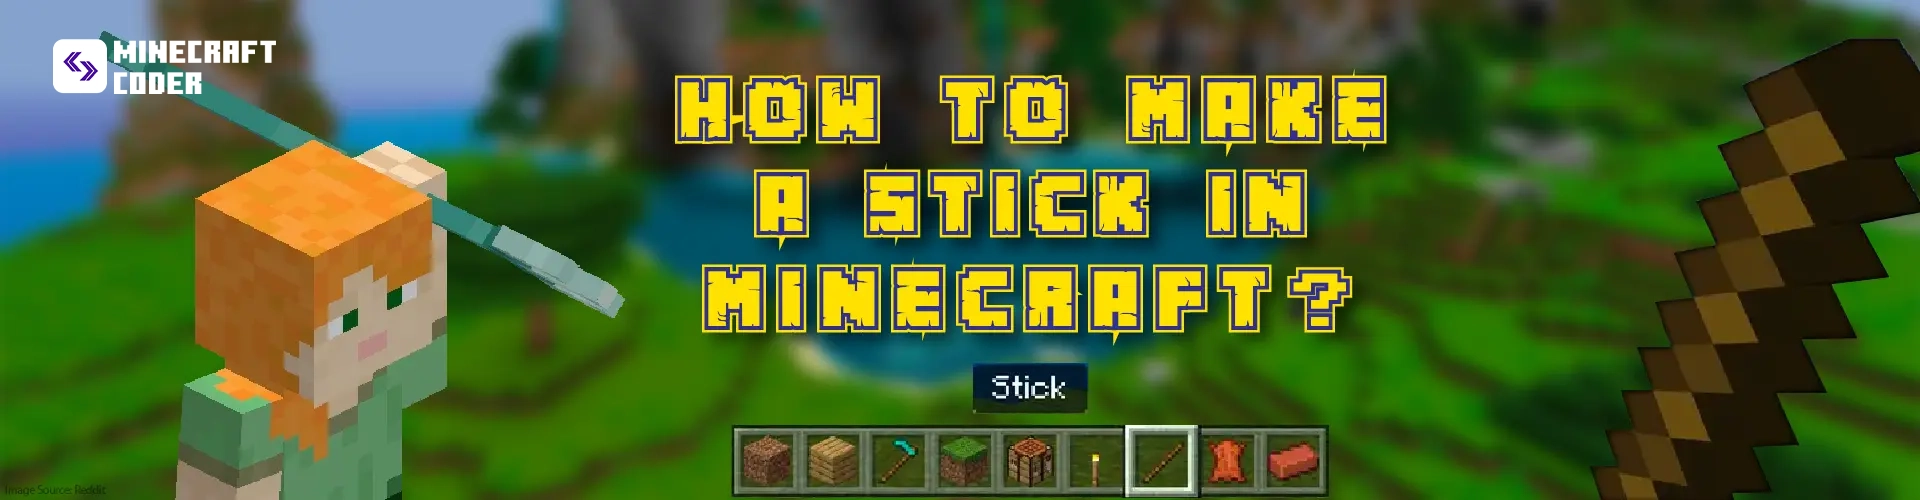 Make stick in minecraft